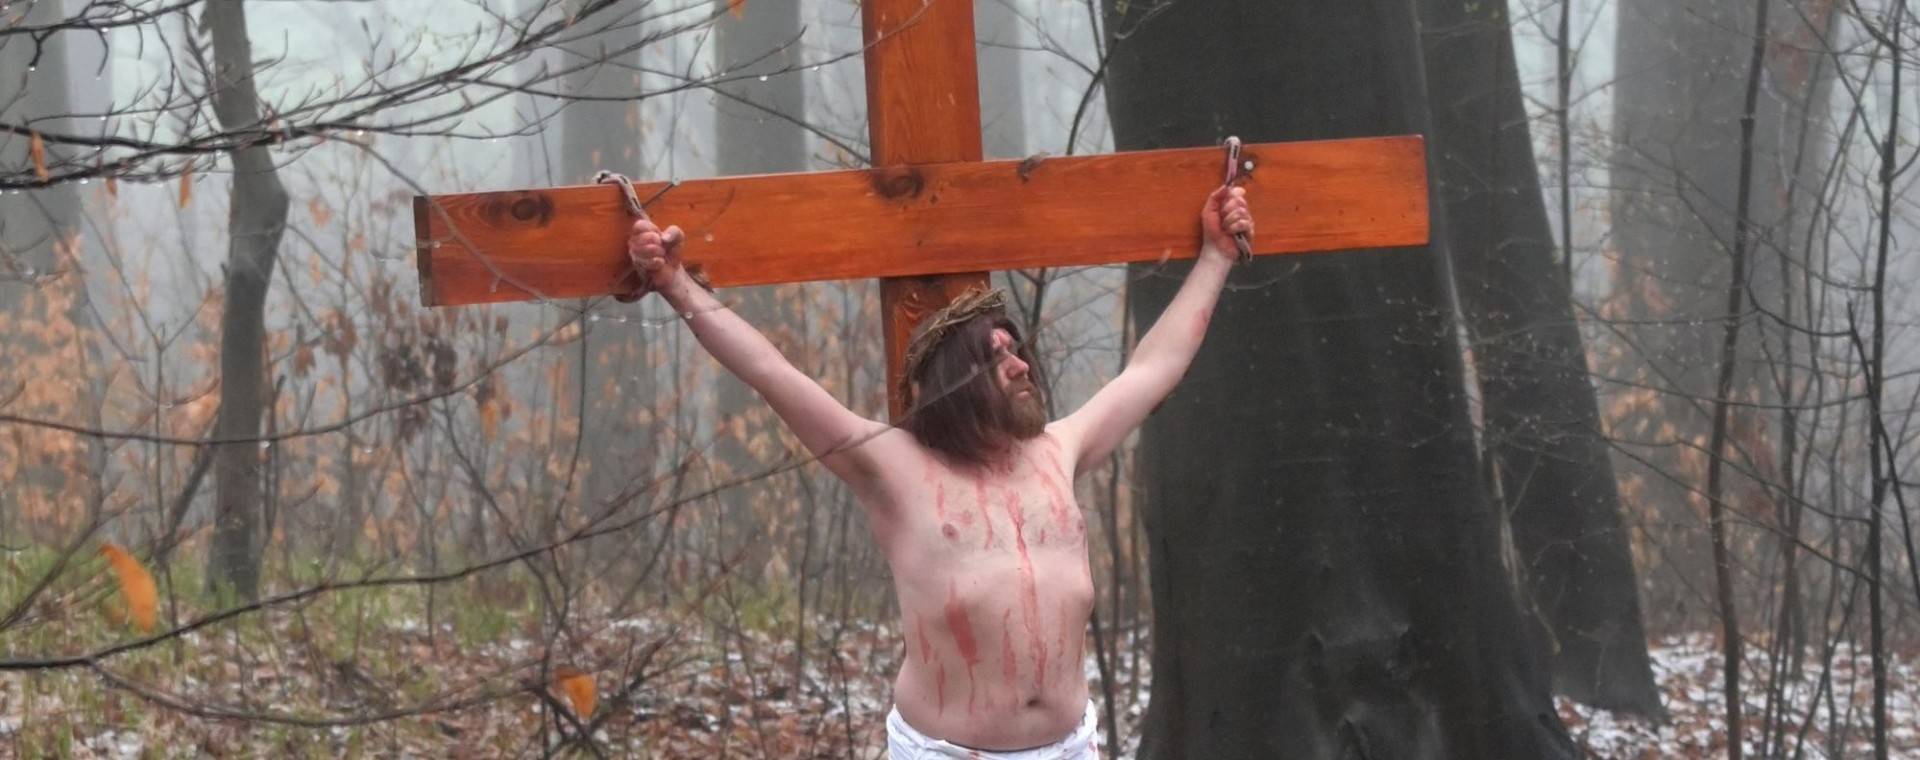 Krzyżują Chrystusa od 25 lat. Krwawe misterium w Alwerni